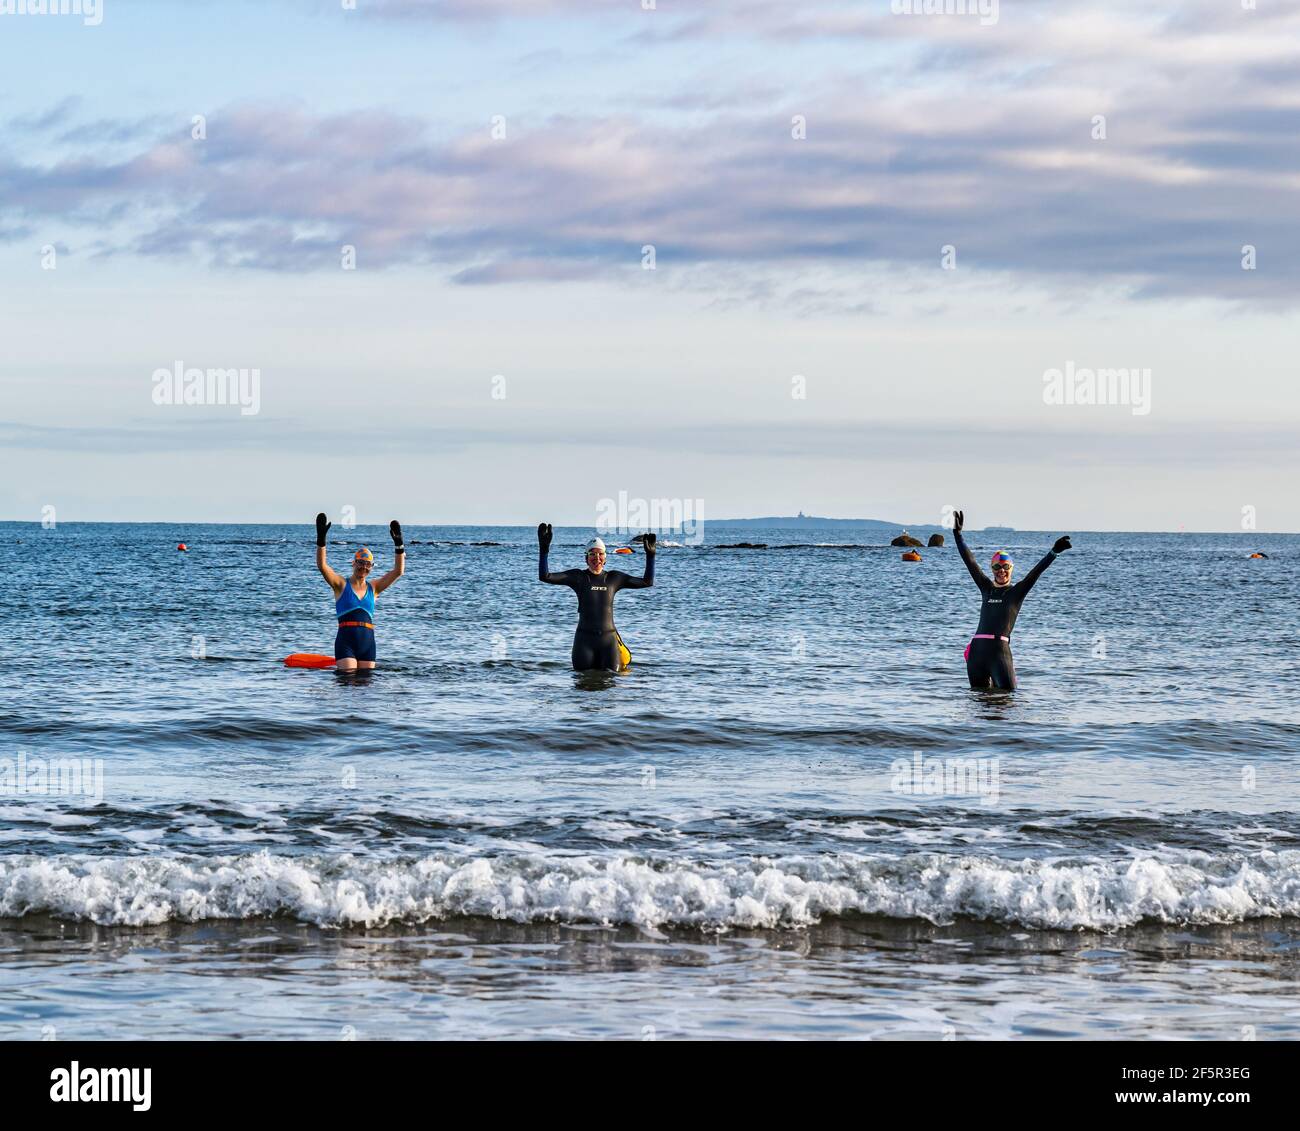 Wildwasser- oder Freiwasser-Schwimmerinnen in Neoprenanzügen betreten Firth of Forth Sea mit ausgestreckten Armen, North Berwick, East Lothian, Schottland, Großbritannien Stockfoto